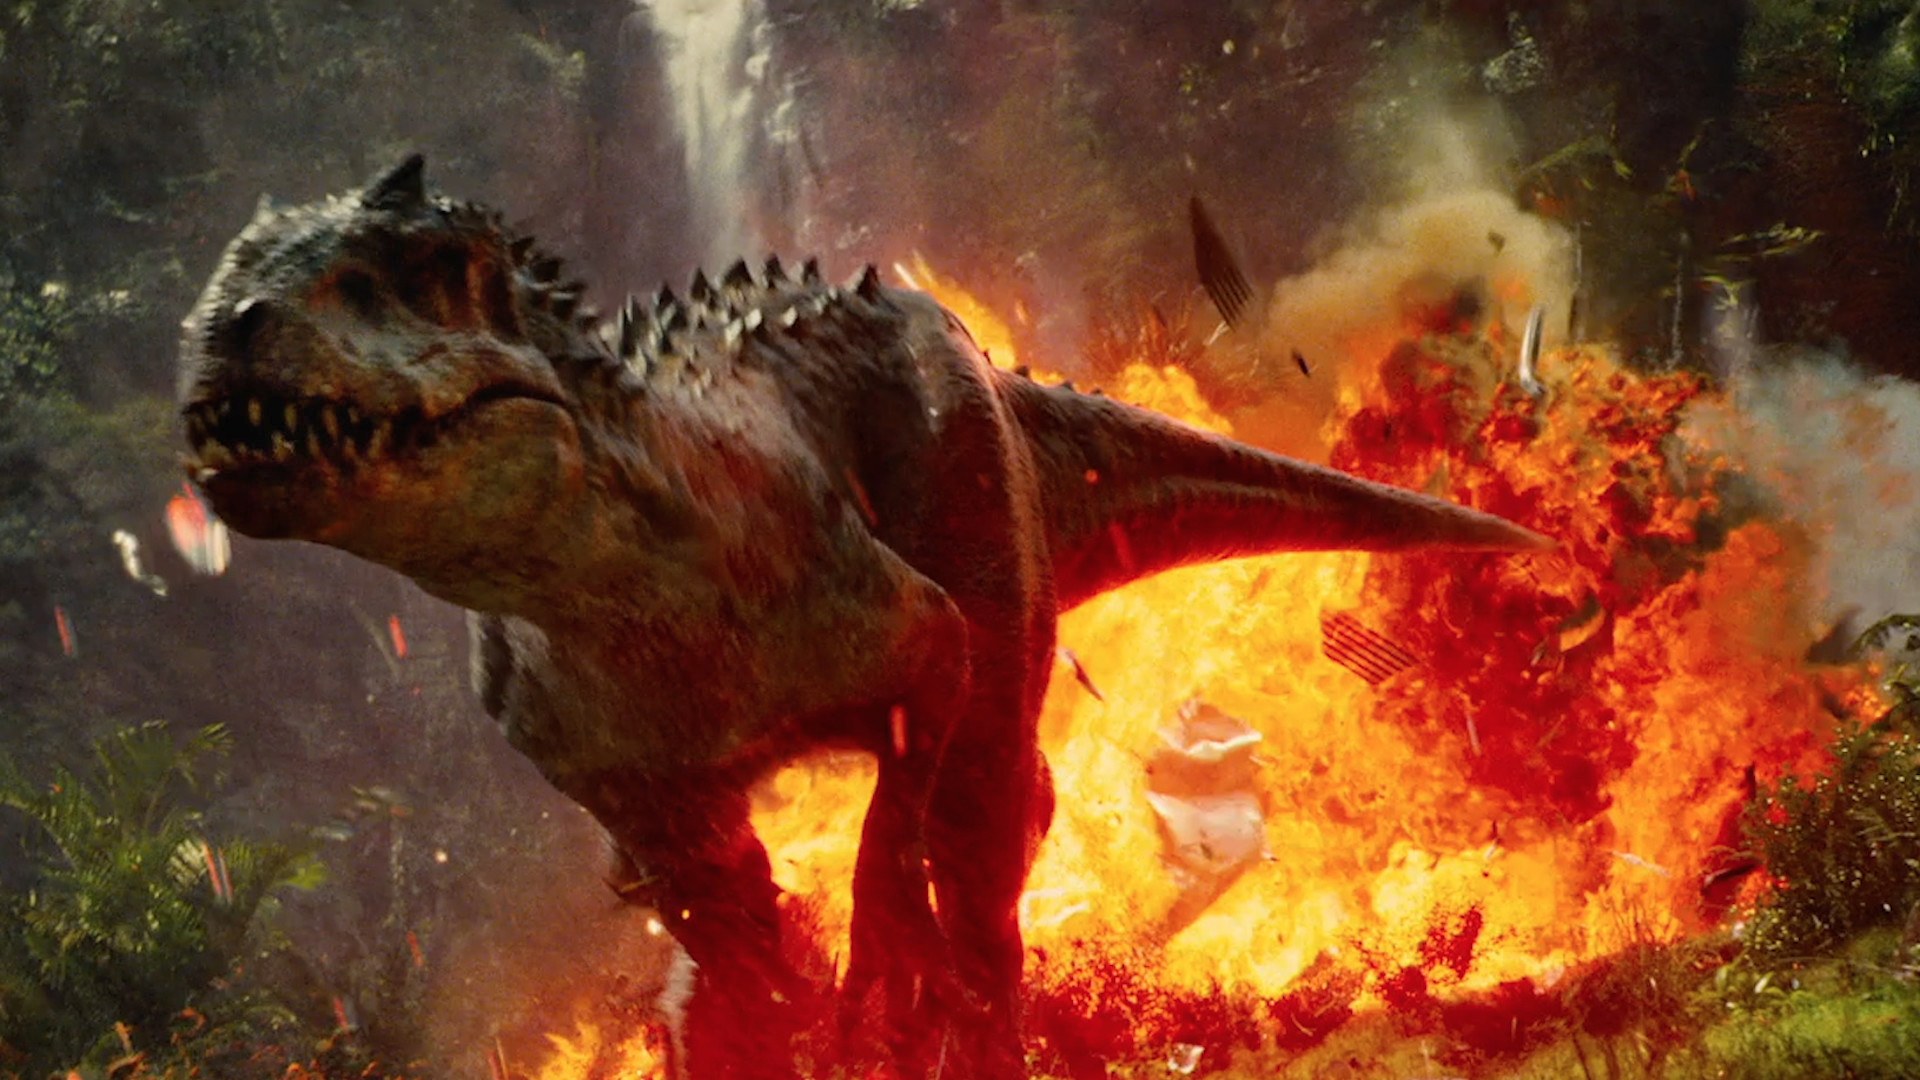 indominus rex fond d'écran,dinosaure,démon,oeuvre de cg,dragon,mythologie